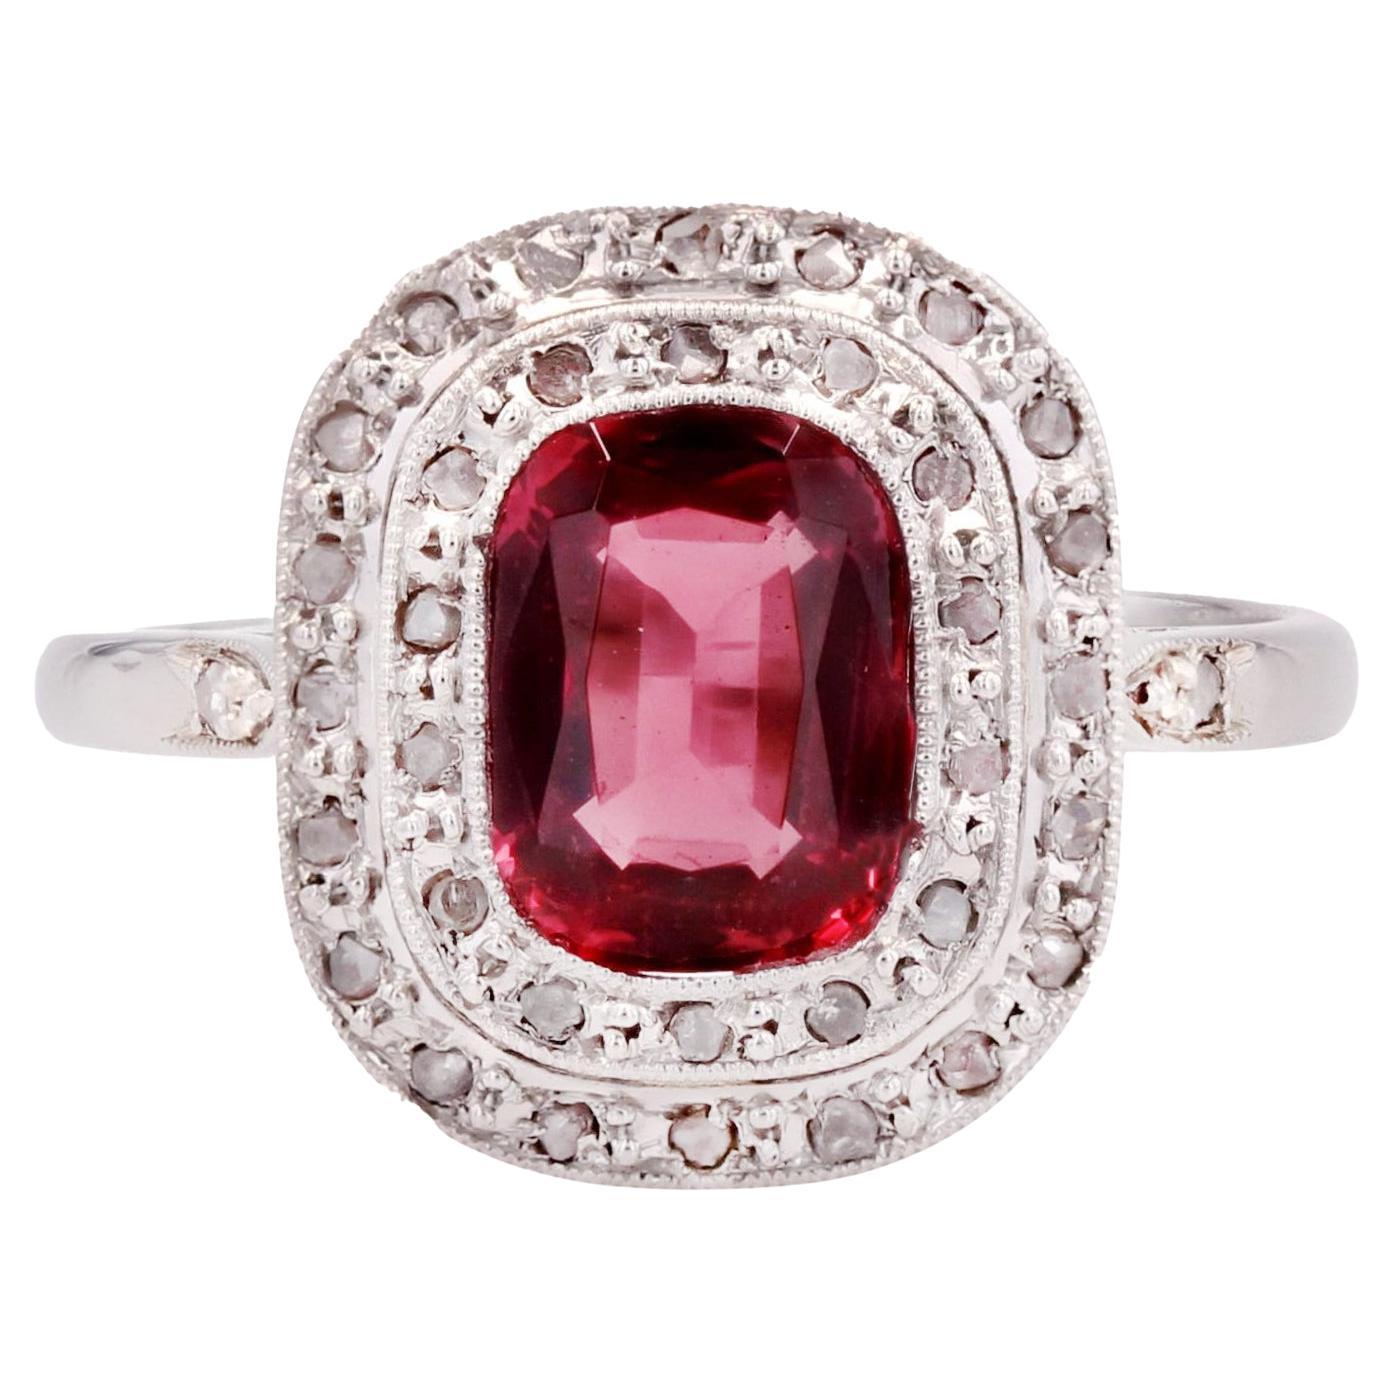 French 1930s 1.20 Carat Red Spinel Diamonds 18 Karat White Gold Ring